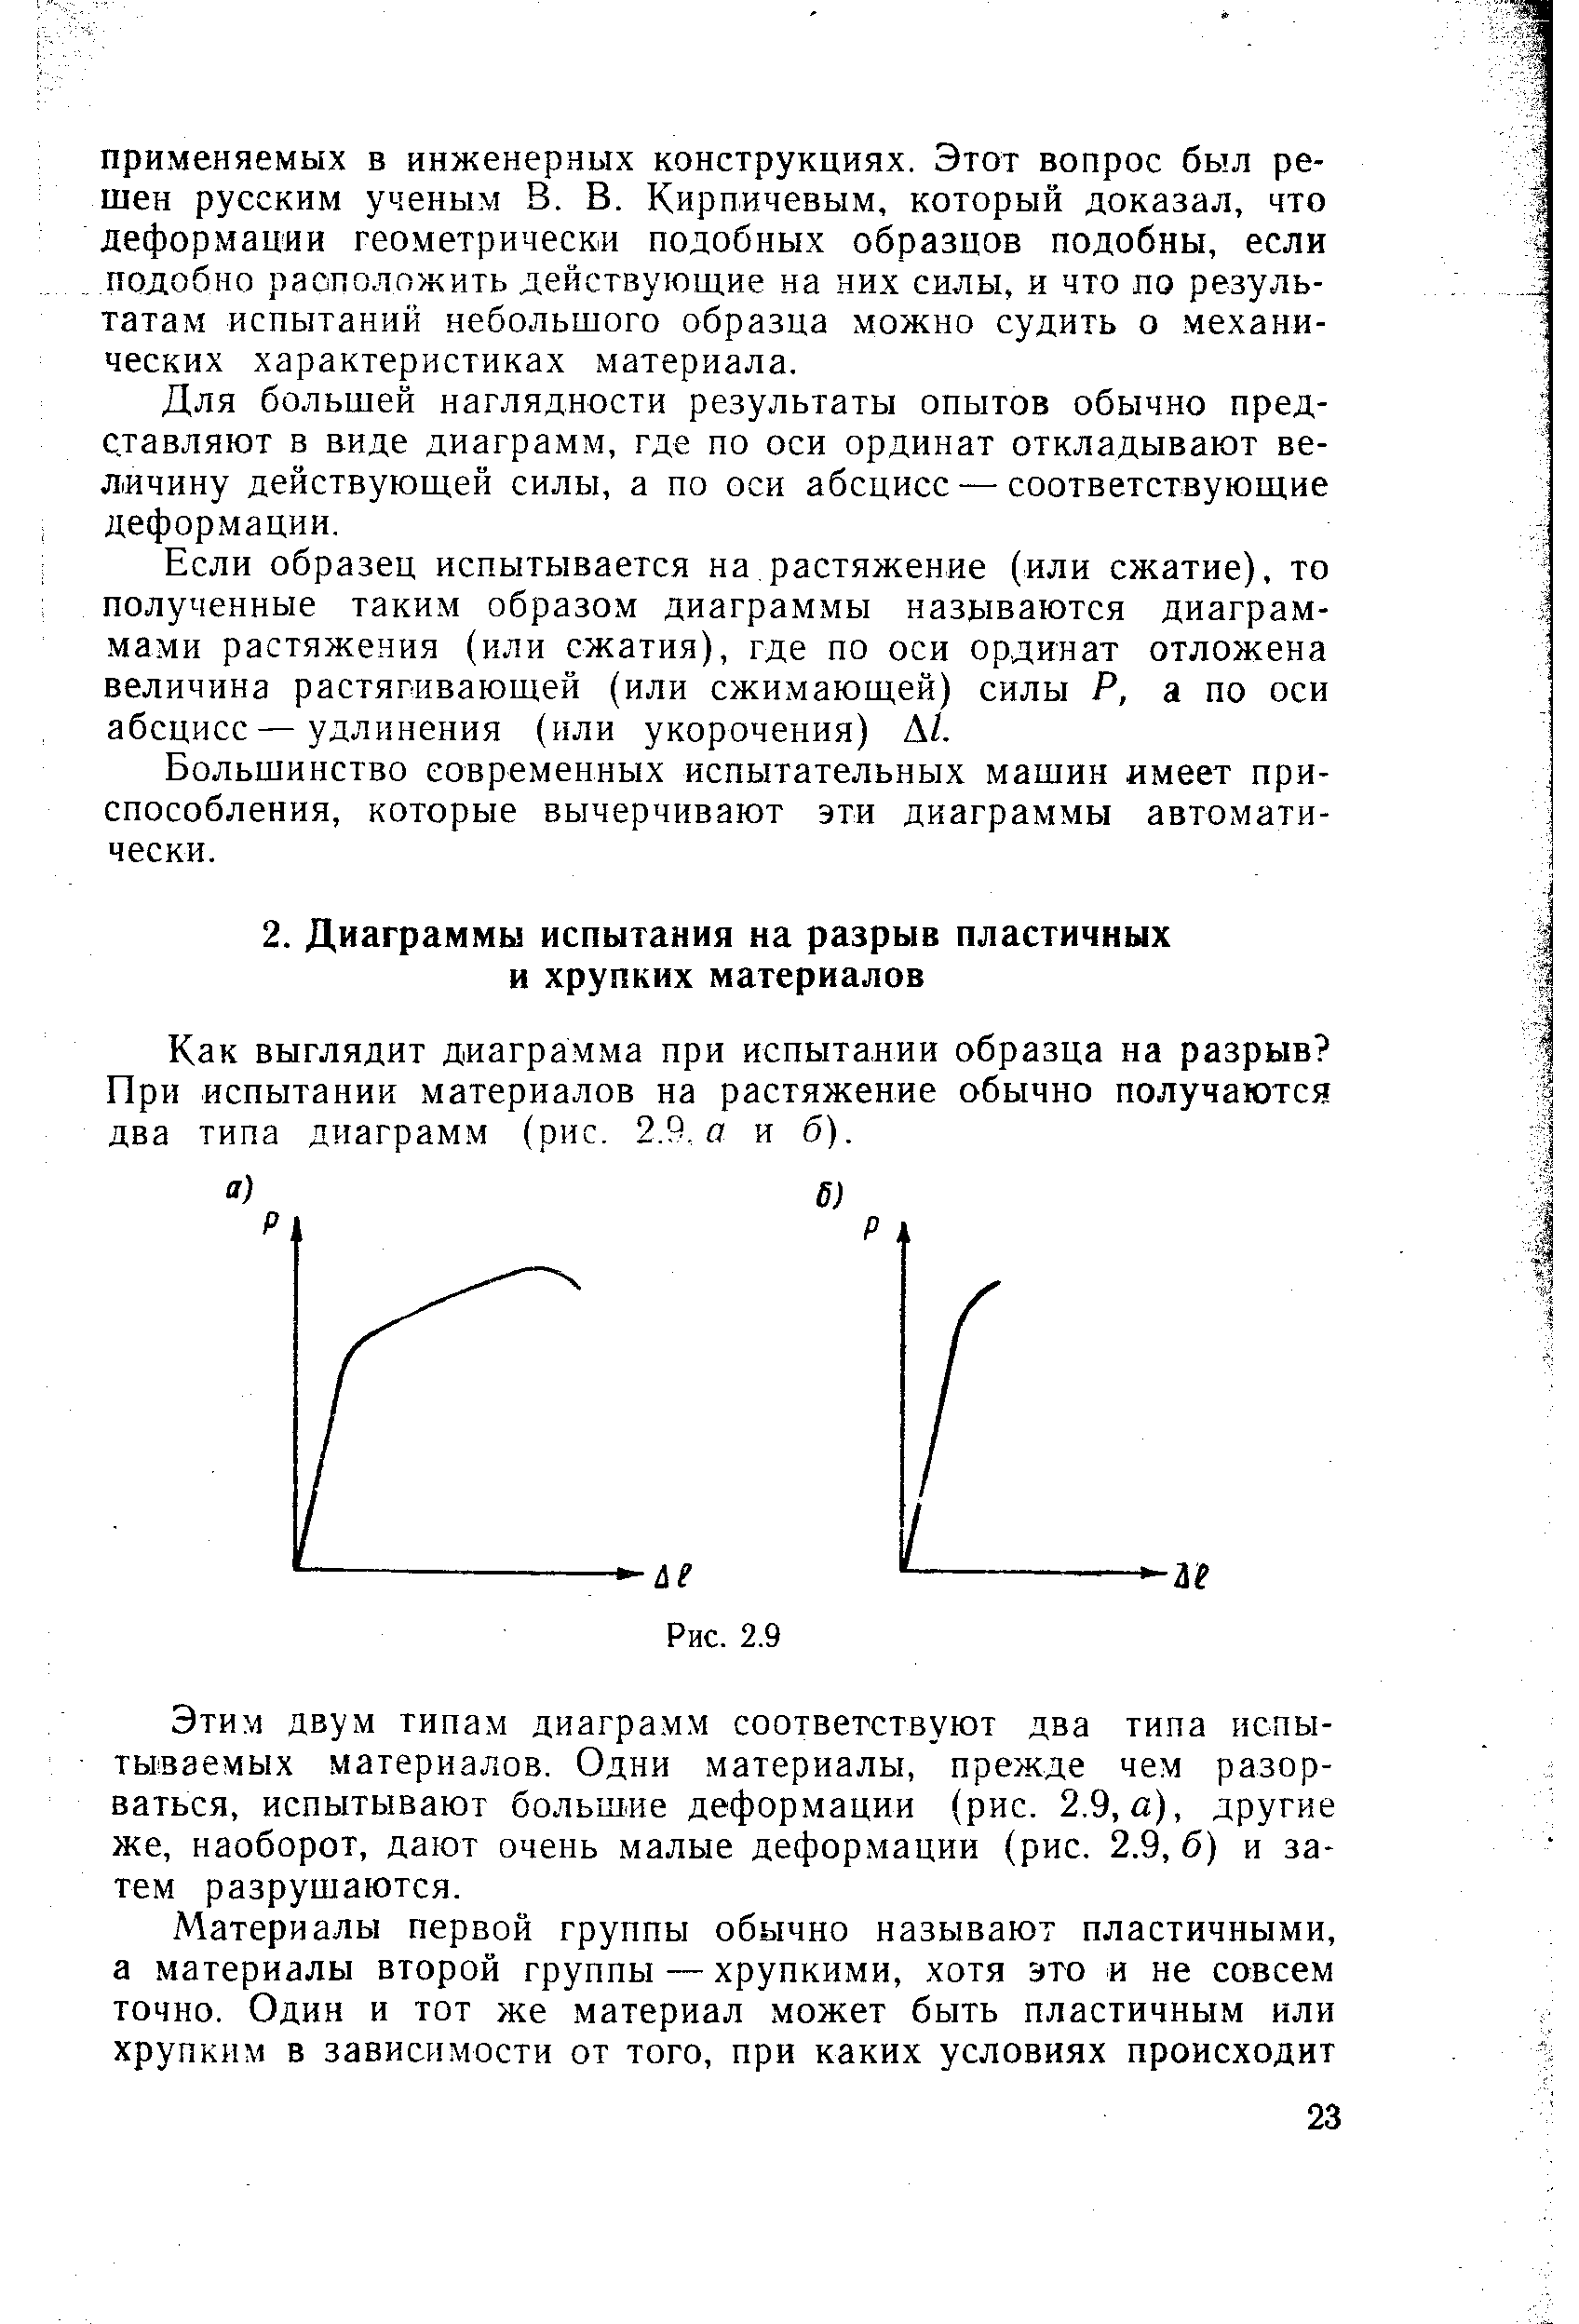 Как выглядит диаграмма при испытании образца на разрыв При испытании материалов на растяжение обычно получаются два типа диаграмм (рис. 2.9, о и б).
